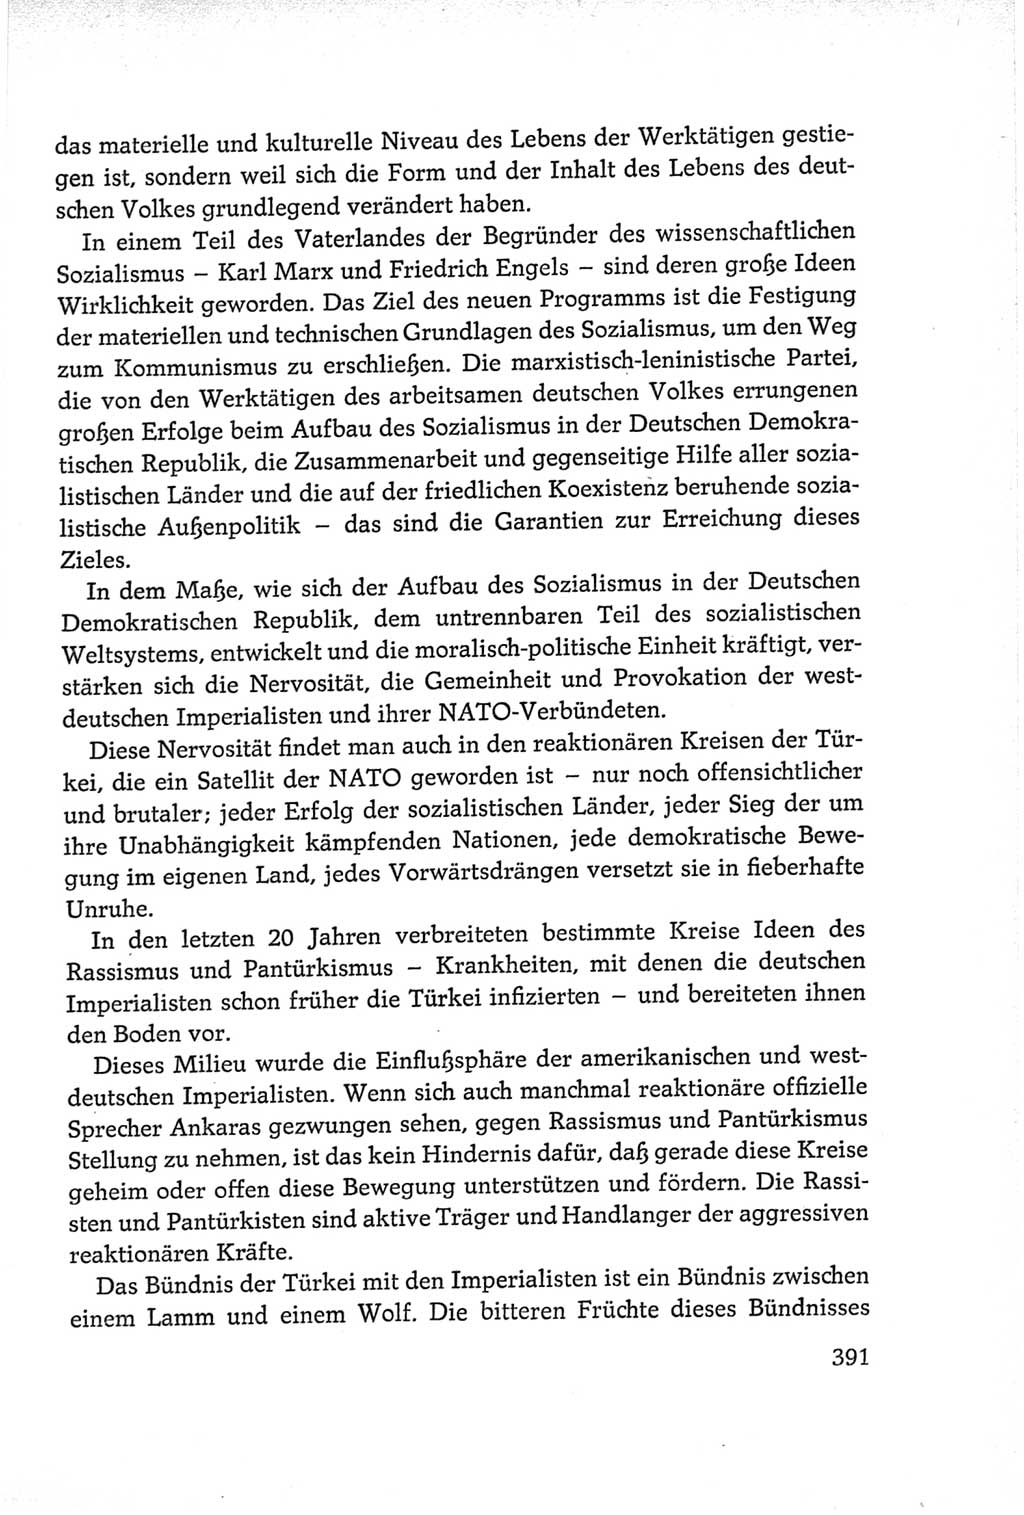 Protokoll der Verhandlungen des Ⅵ. Parteitages der Sozialistischen Einheitspartei Deutschlands (SED) [Deutsche Demokratische Republik (DDR)] 1963, Band Ⅱ, Seite 391 (Prot. Verh. Ⅵ. PT SED DDR 1963, Bd. Ⅱ, S. 391)